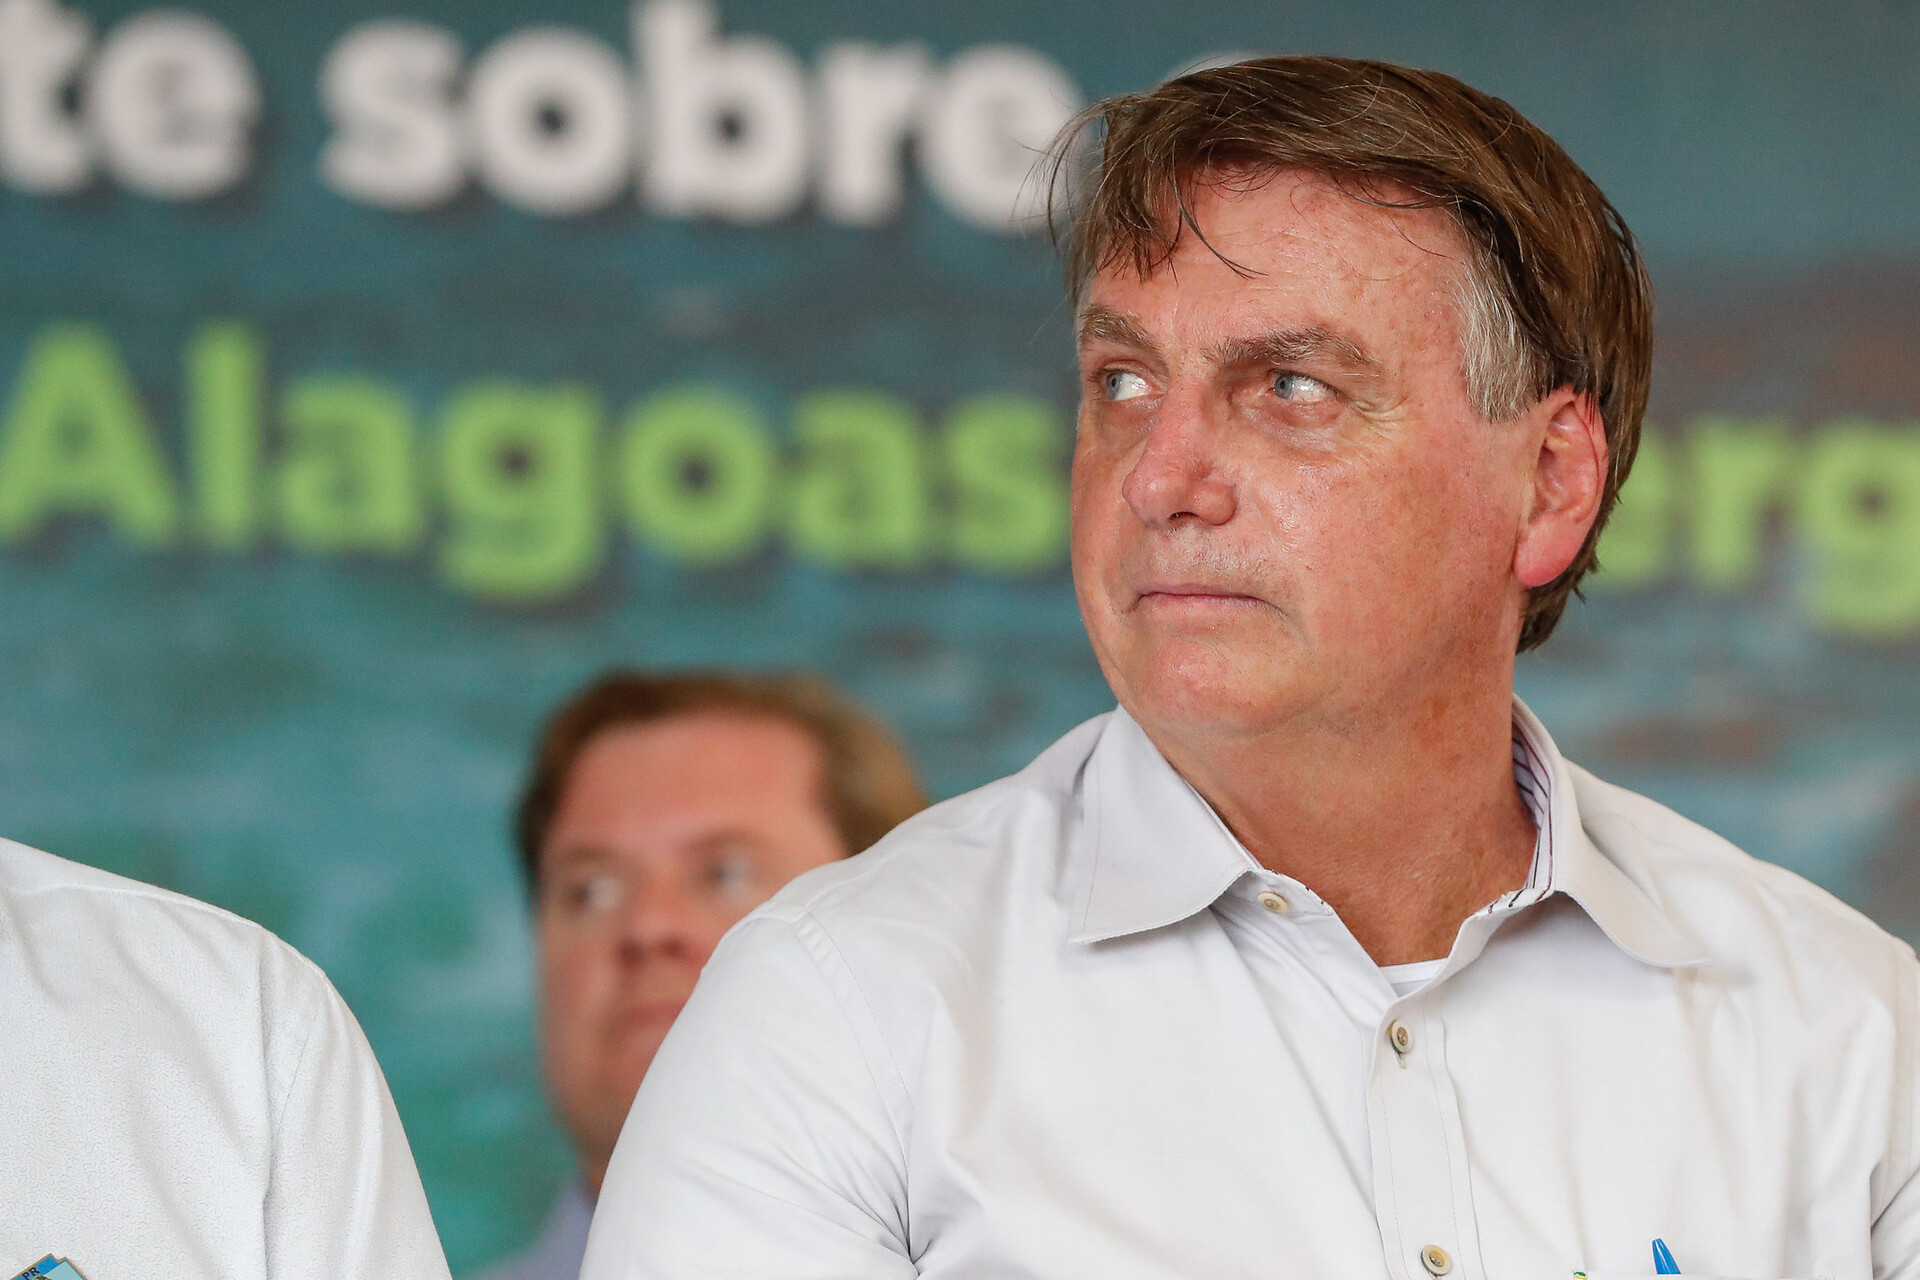  STF abre novo inquérito contra o presidente Jair Bolsonaro por divulgar dados sigilosos do TSE